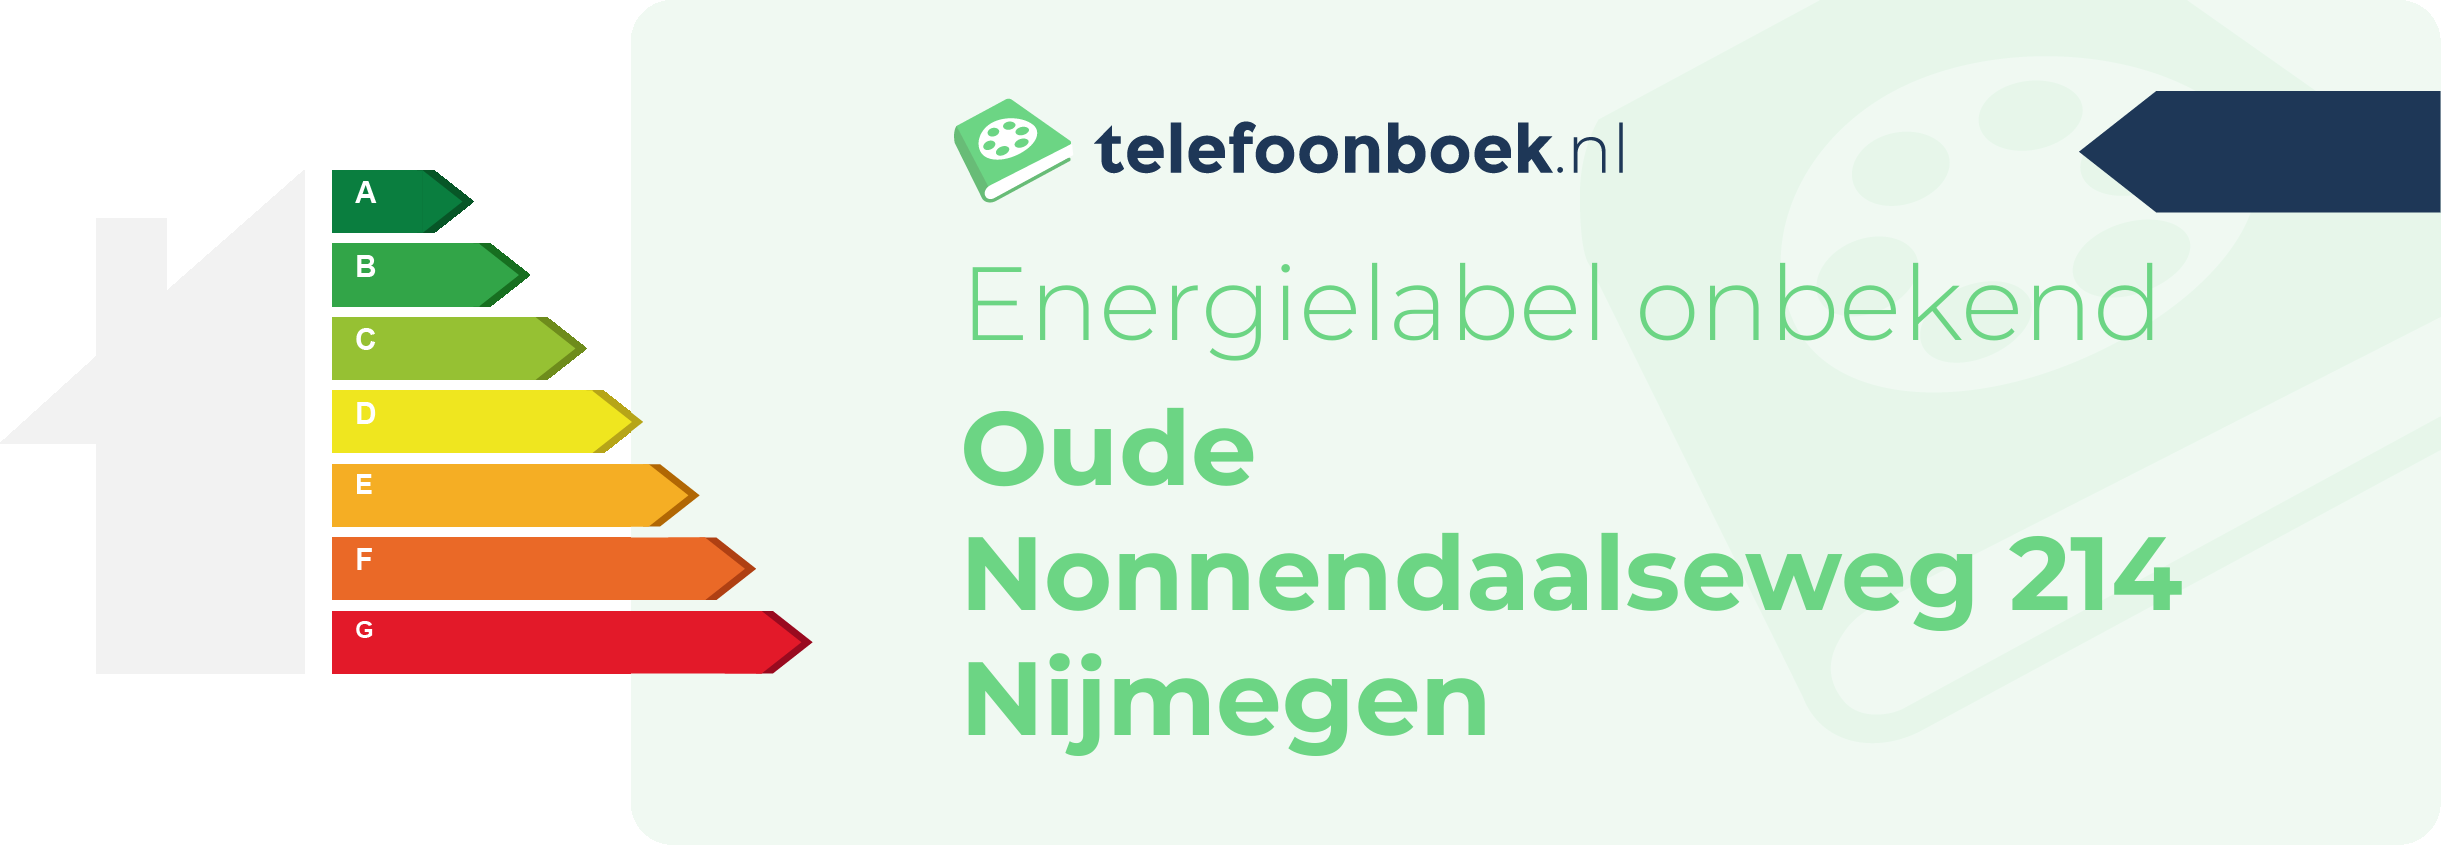 Energielabel Oude Nonnendaalseweg 214 Nijmegen